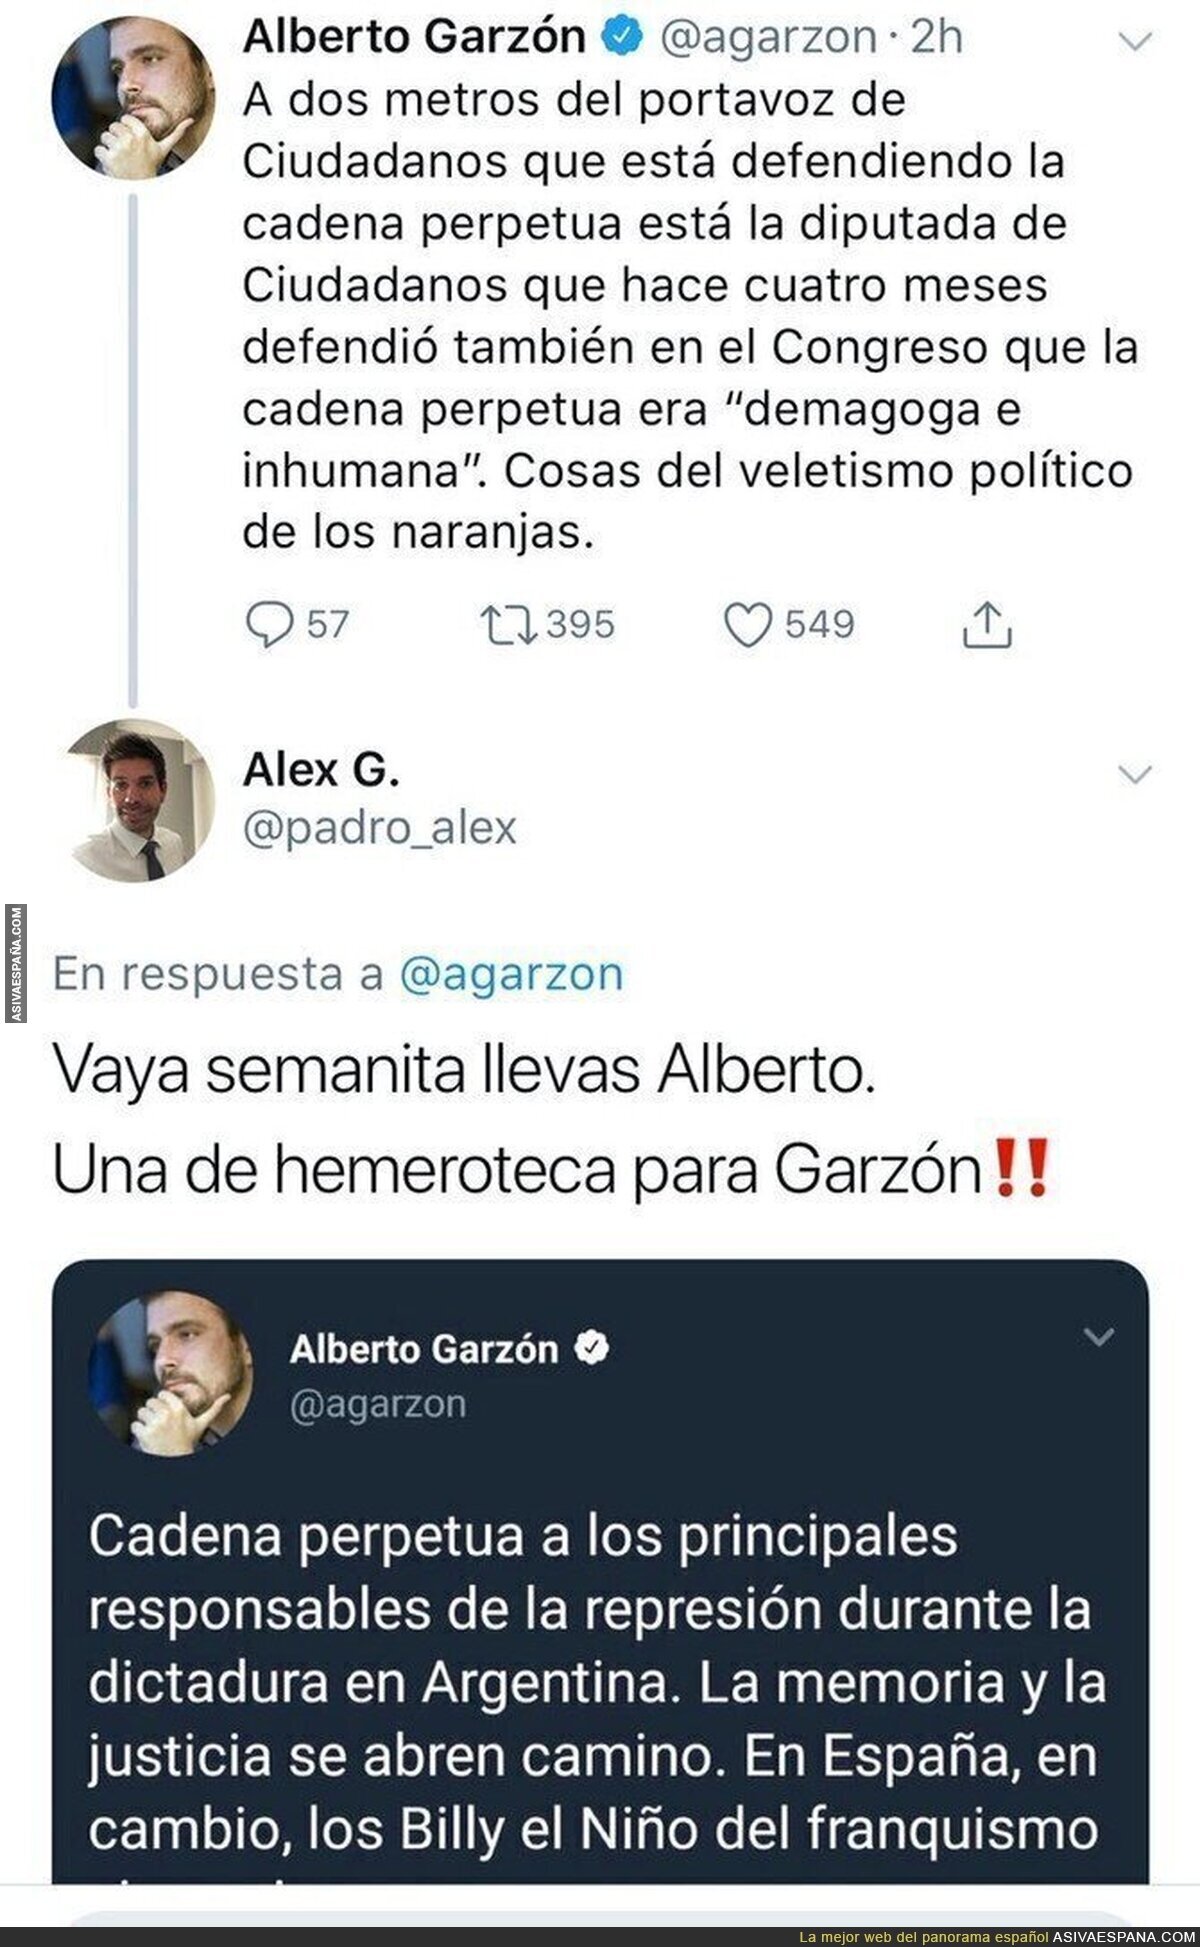 No ha sido la mejor semana de Alberto Garzón